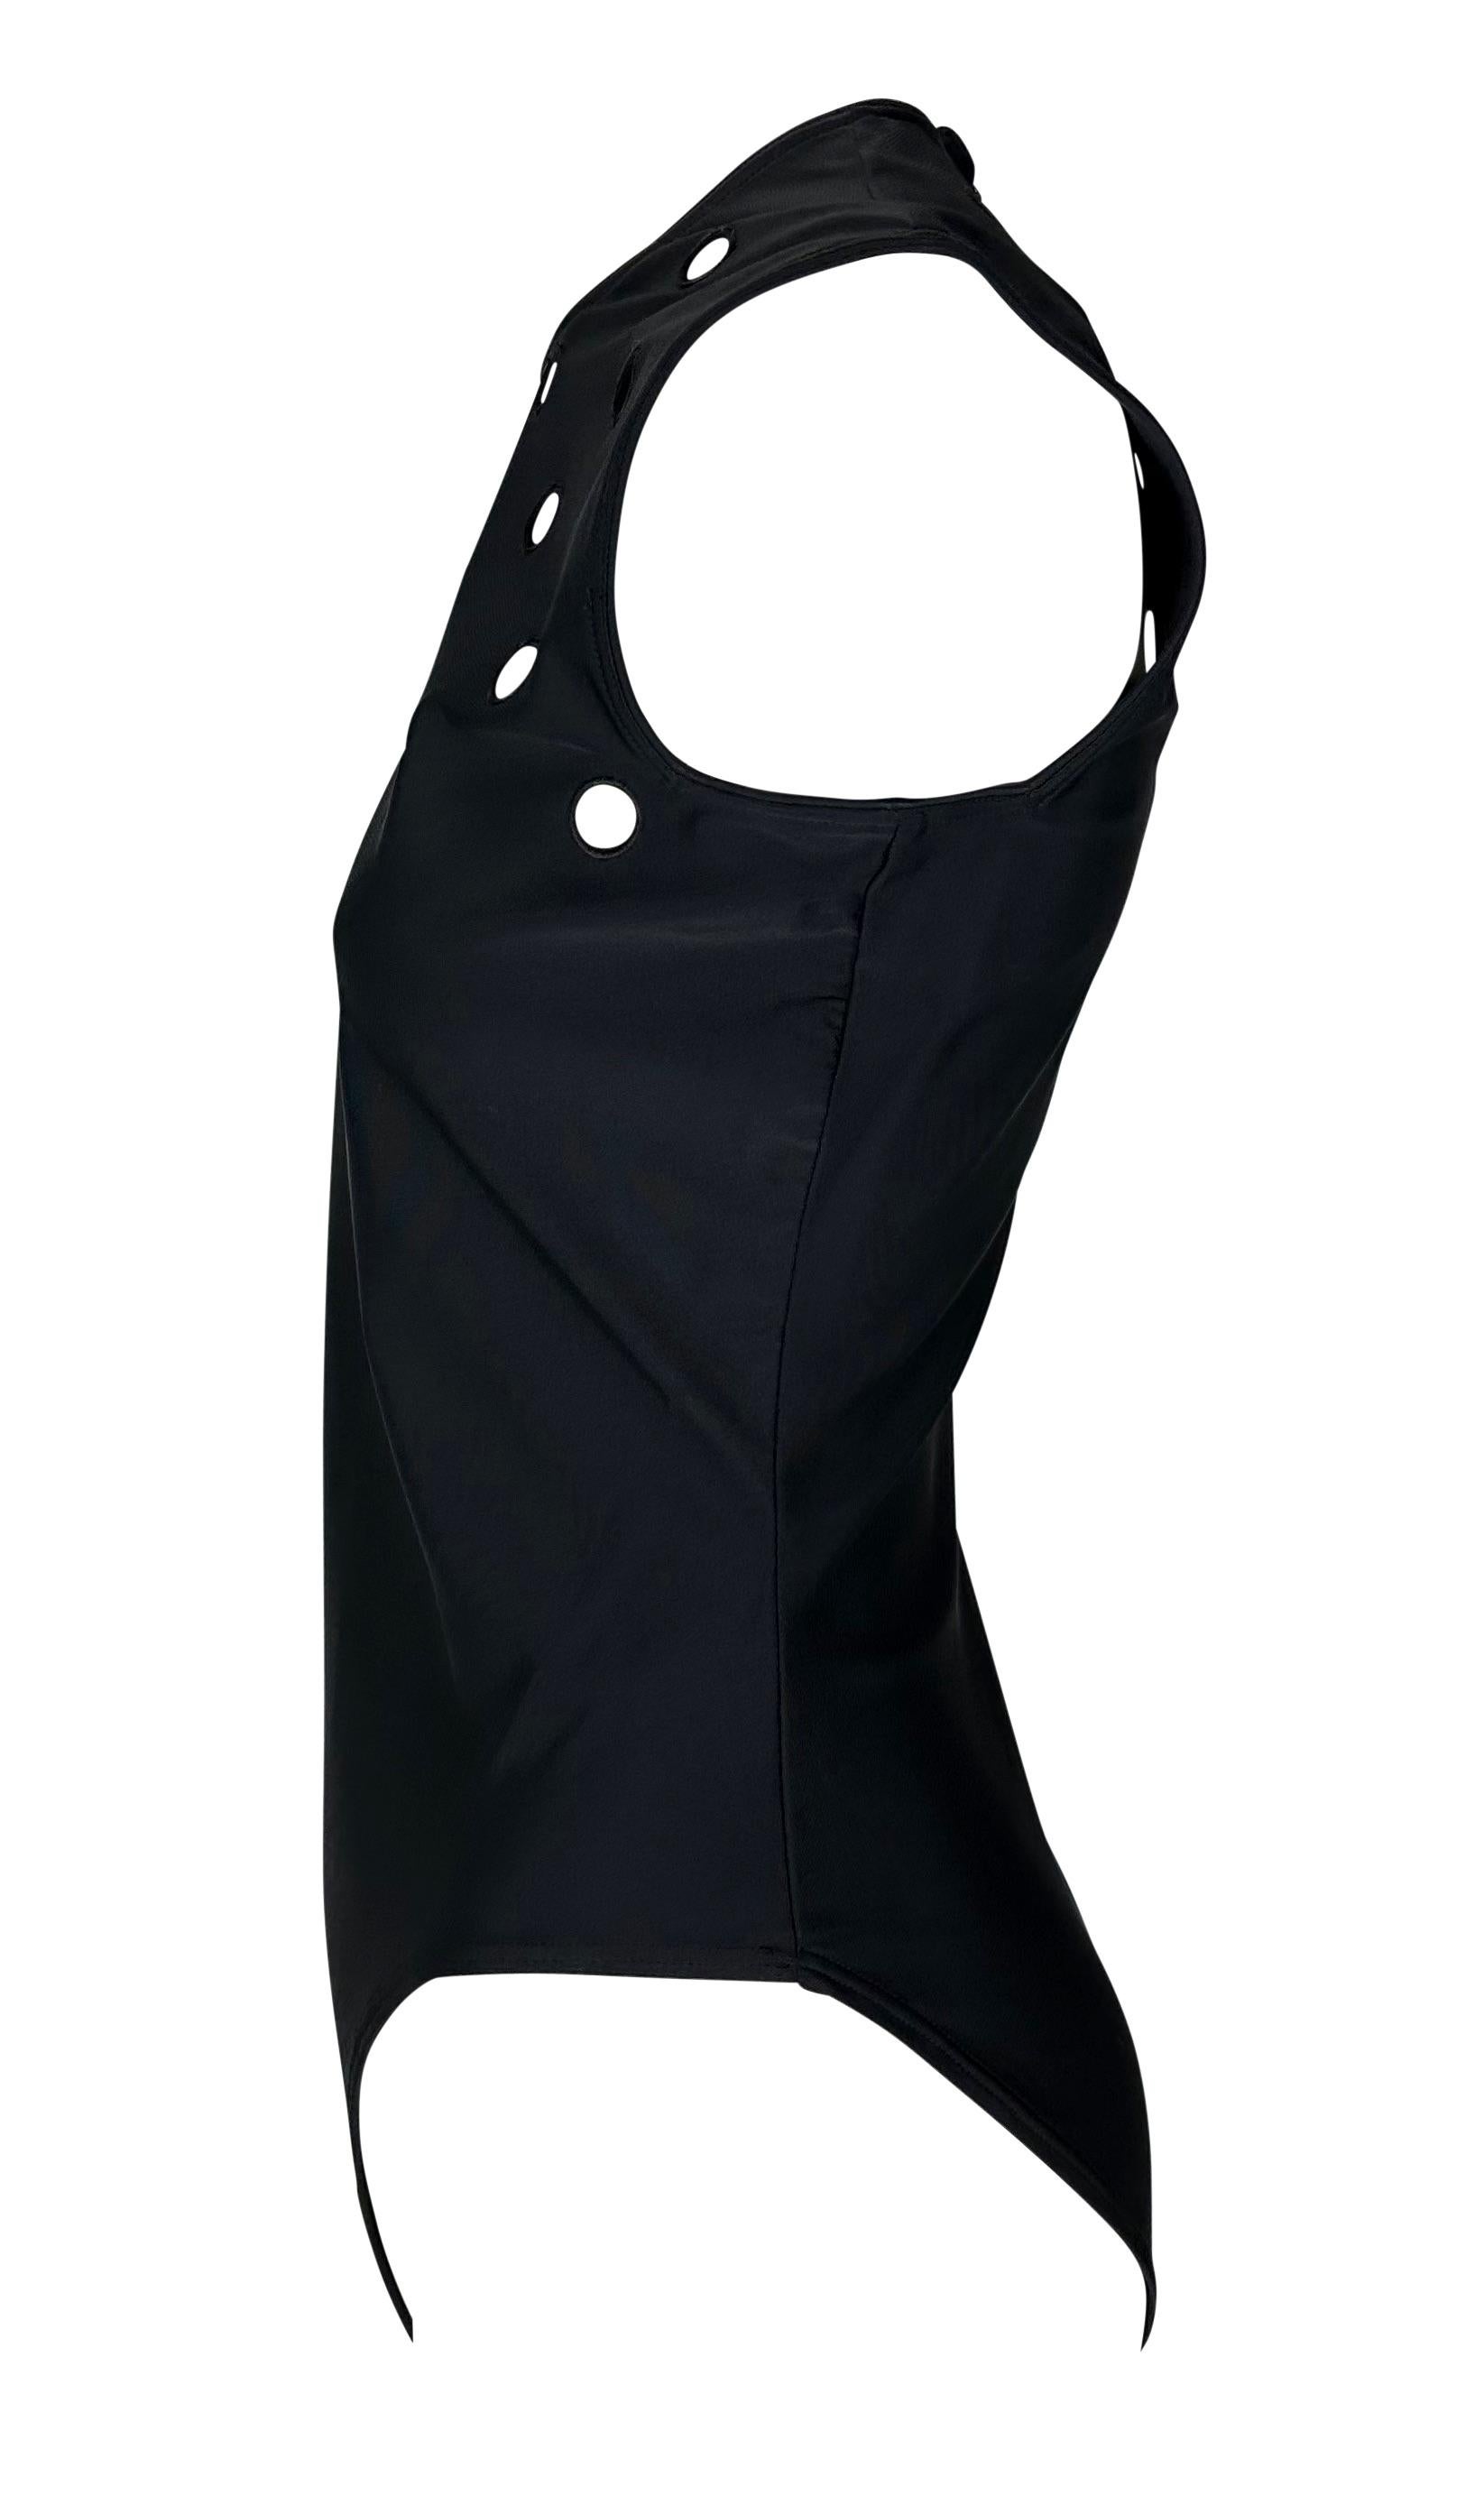 S/S 1994 Gianni Versace Couture Runway Eyelet Cutout Stretch Black Bodysuit Top Pour femmes en vente